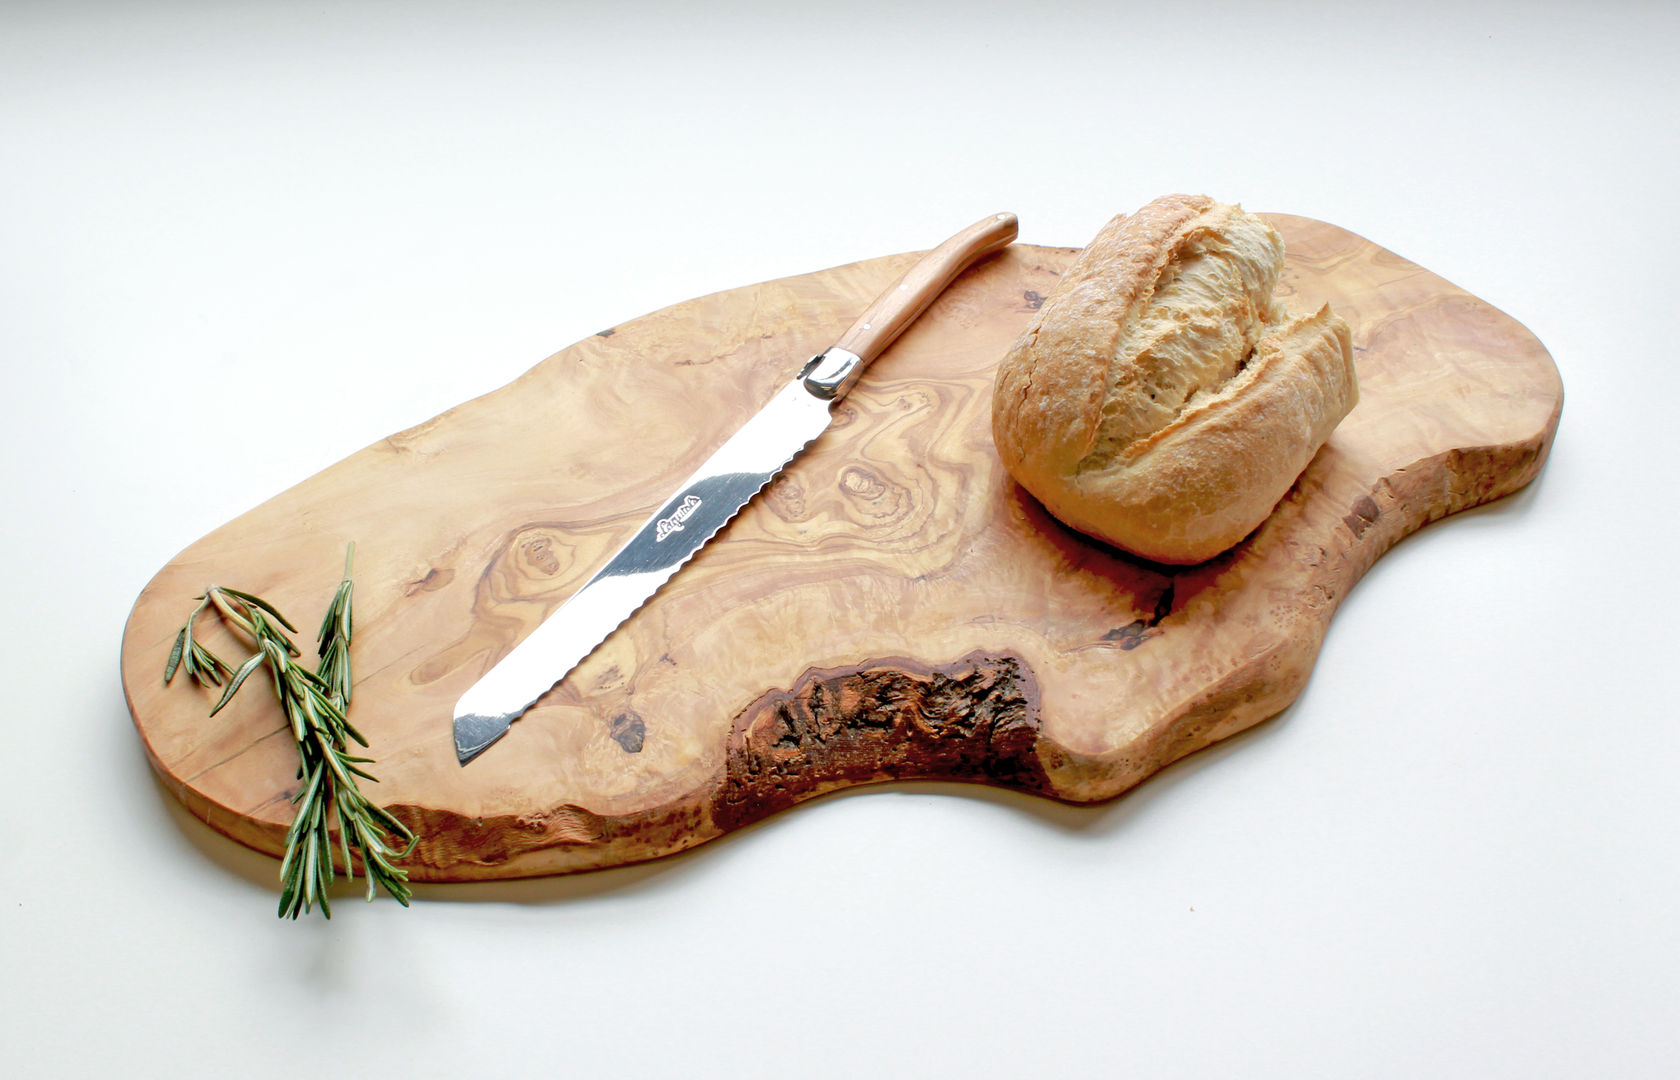 Large Rustic Olive Wood Serving Board, The Rustic Dish The Rustic Dish Cocinas de estilo rústico Utensilios de cocina